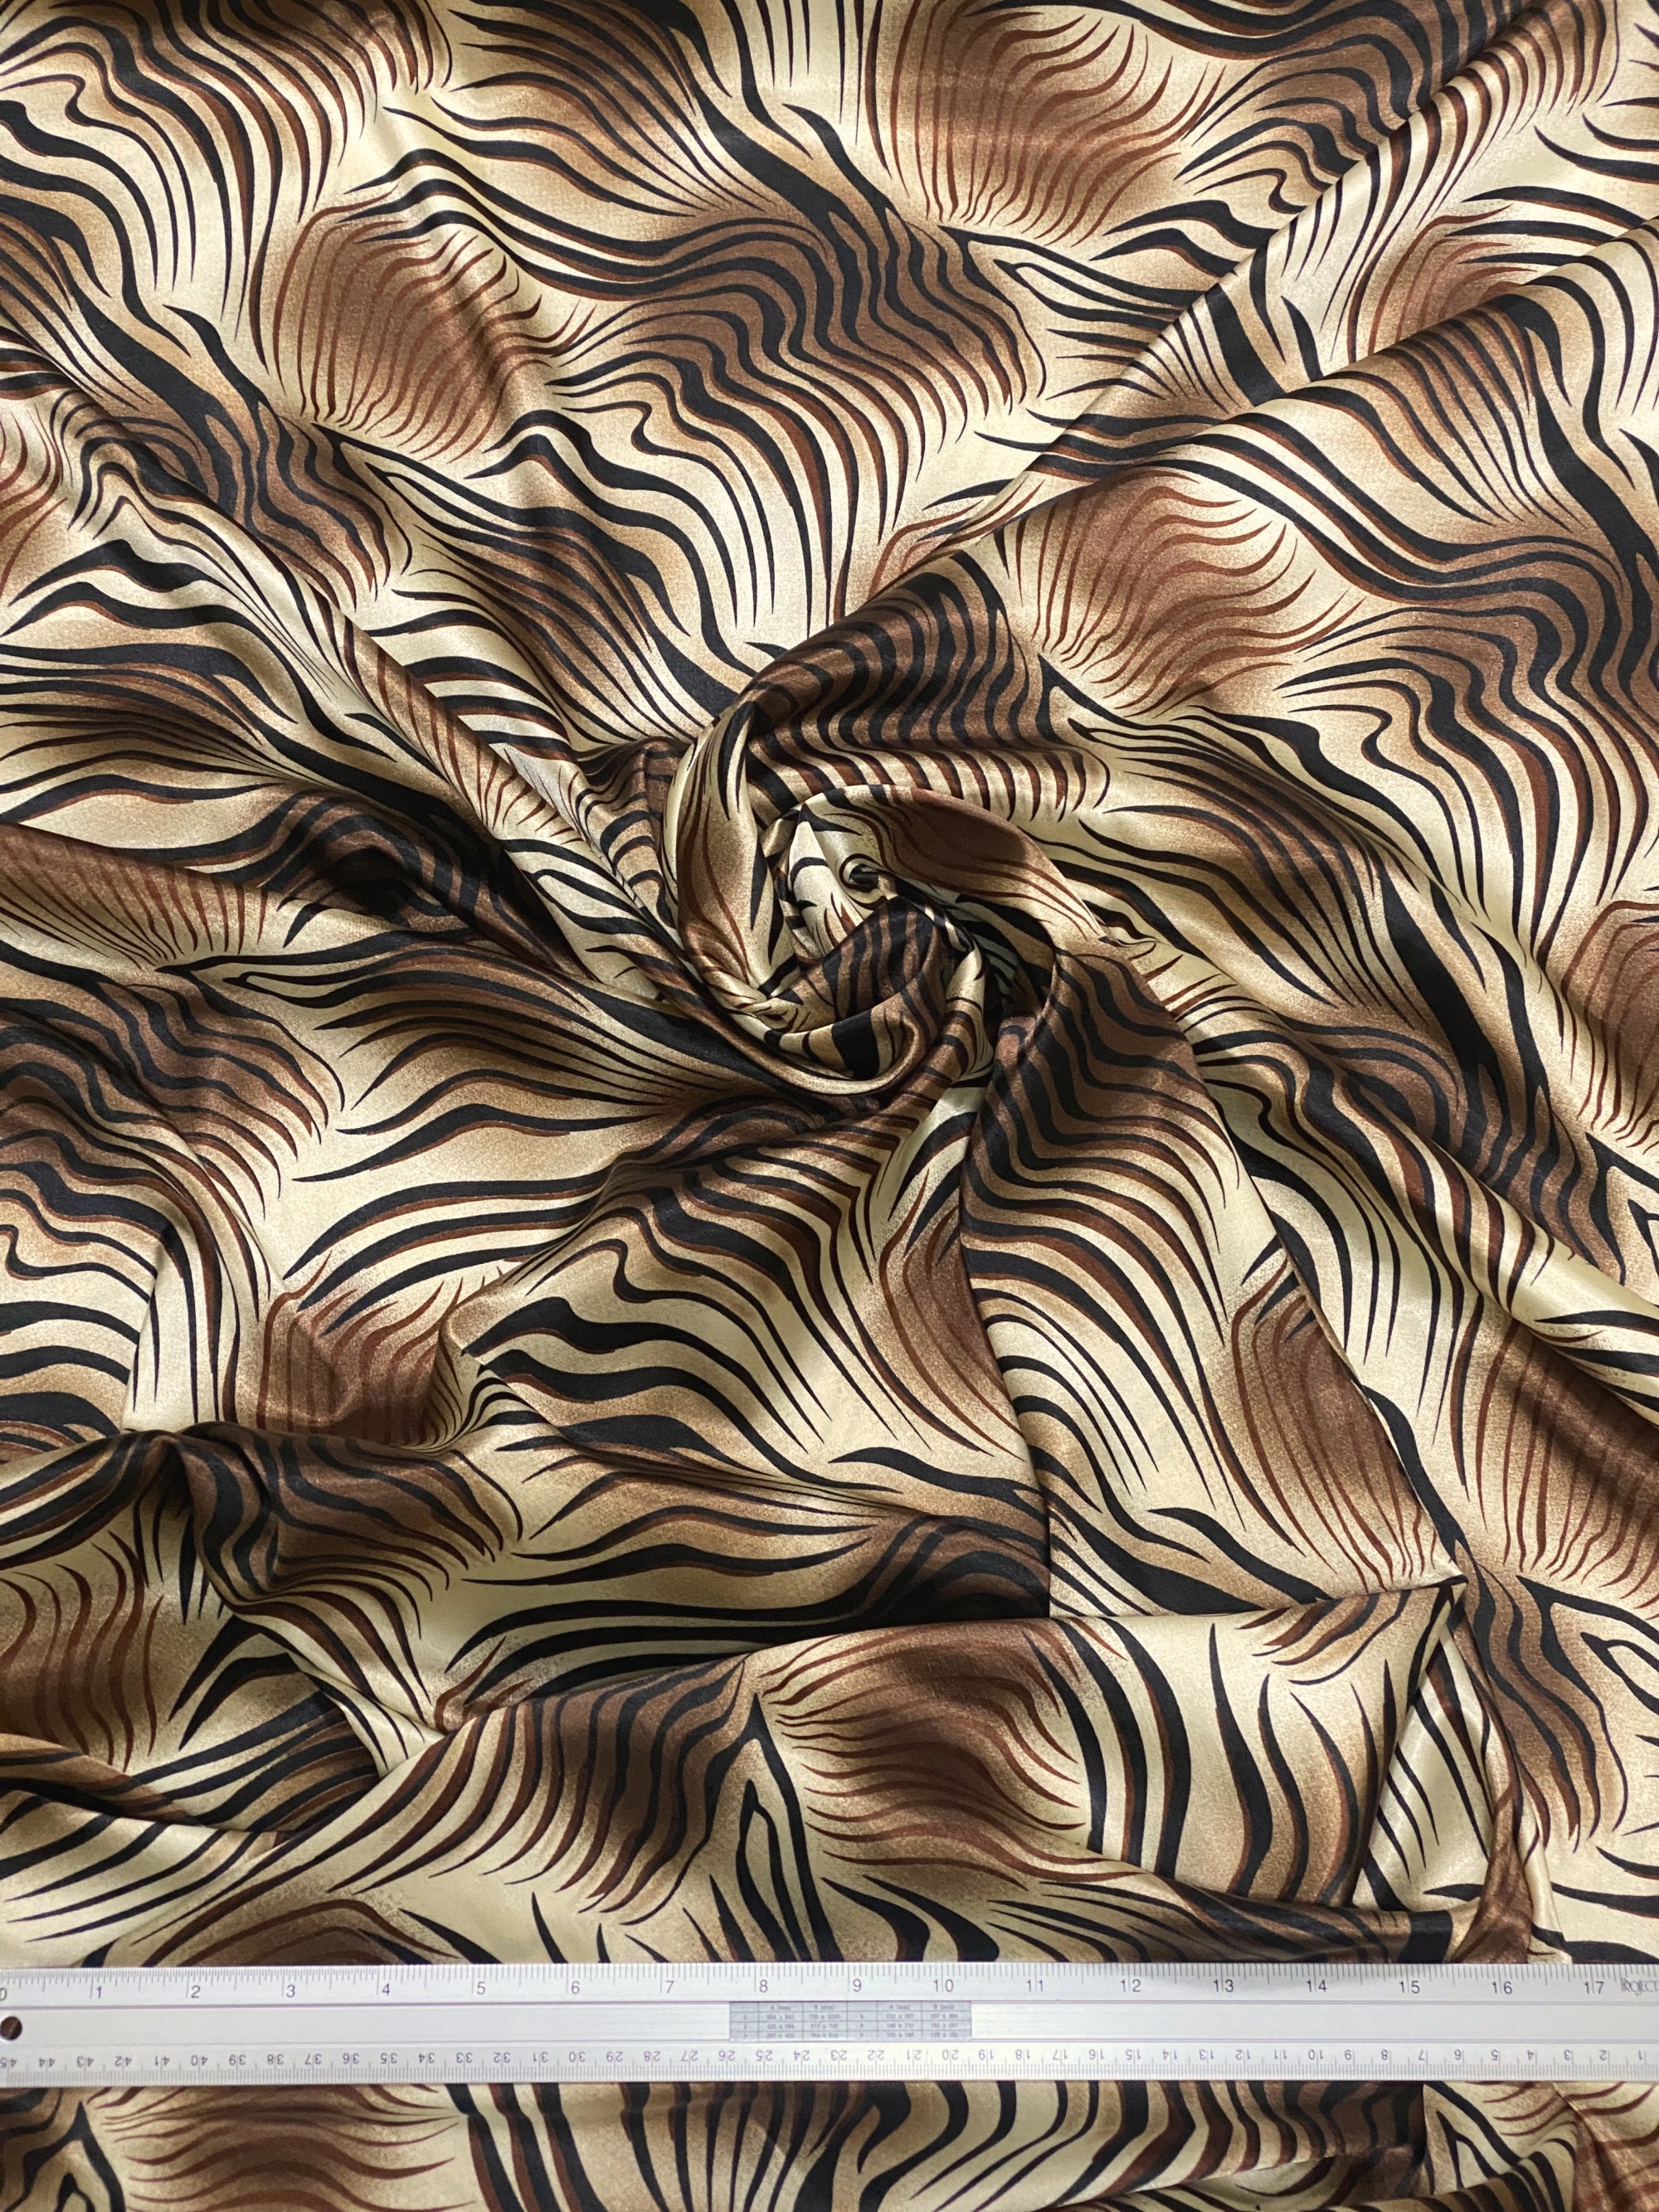 Zebra Pajamas - Etsy